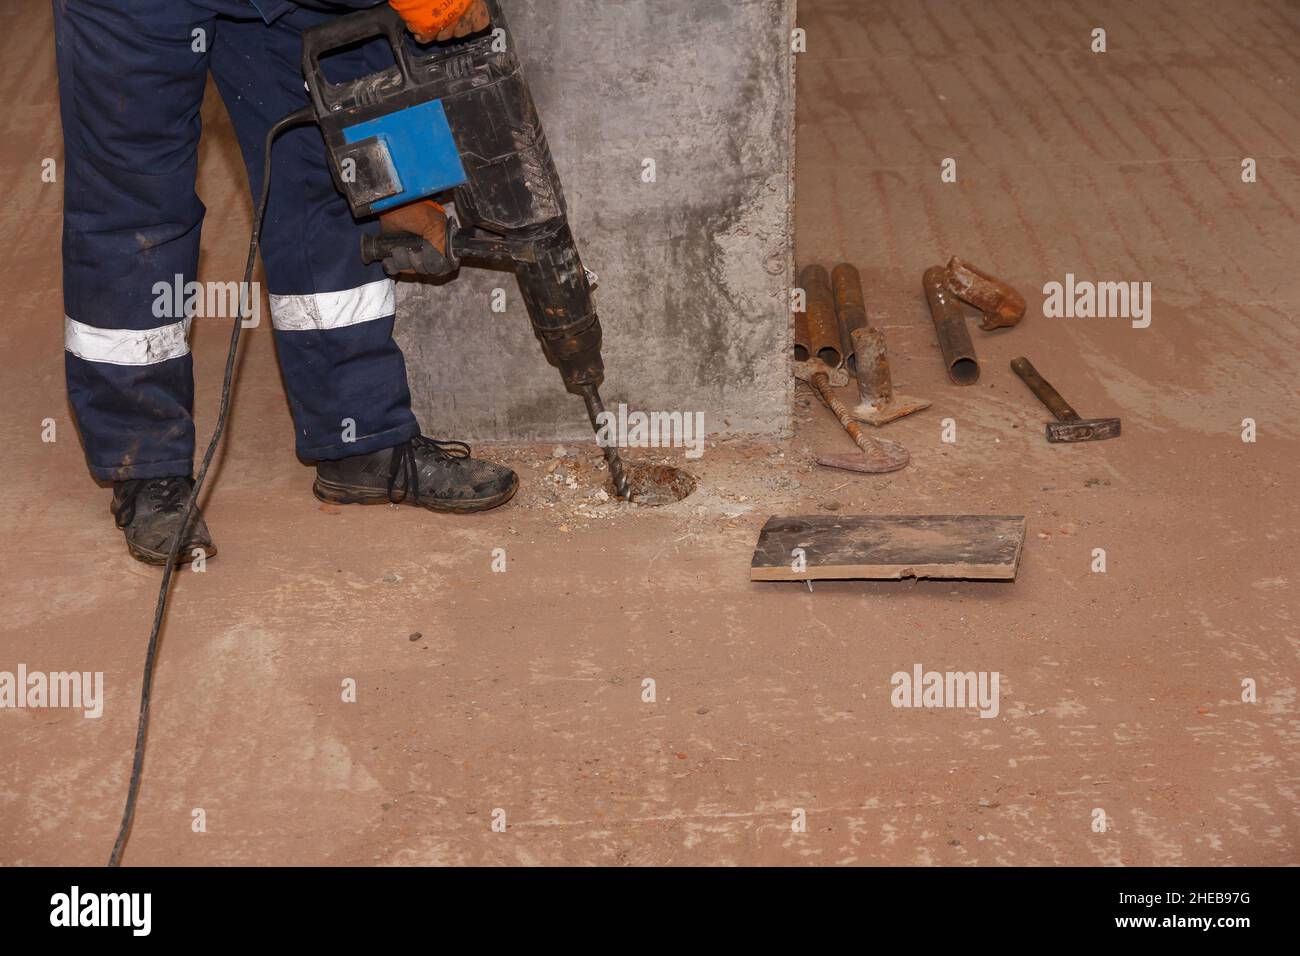 Lavoratore con martello. Perforazione e riparazione di superfici in calcestruzzo da parte di un operatore maschio con martello pneumatico. Lavoratore professionale. Foto Stock